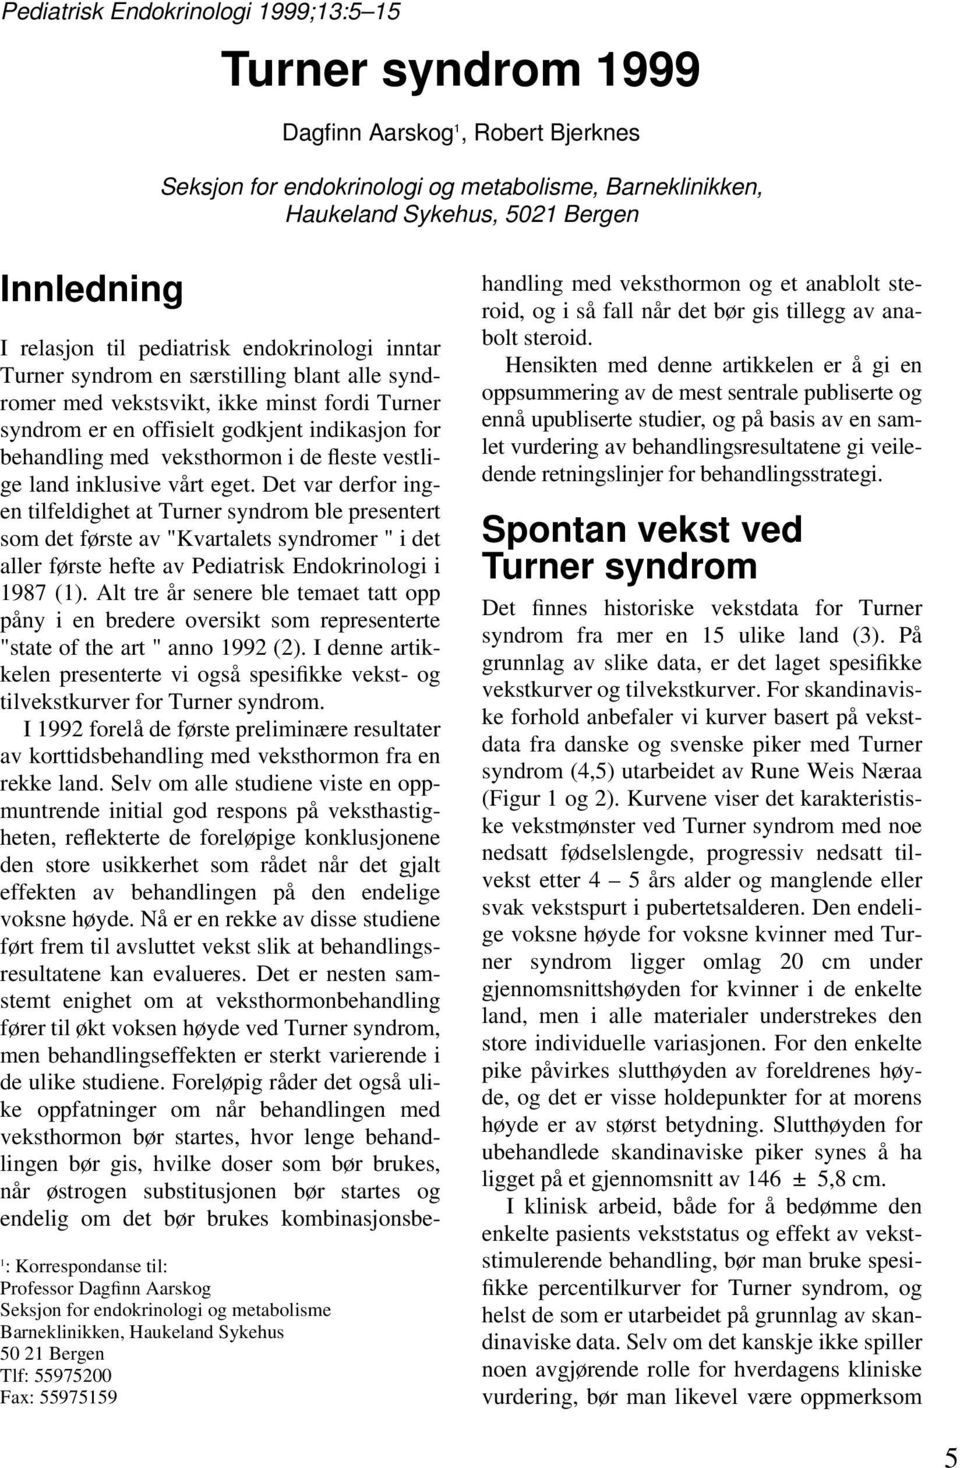 endokrinologi inntar Turner syndrom en særstilling blant alle syndromer med vekstsvikt, ikke minst fordi Turner syndrom er en offisielt godkjent indikasjon for behandling med veksthormon i de fleste